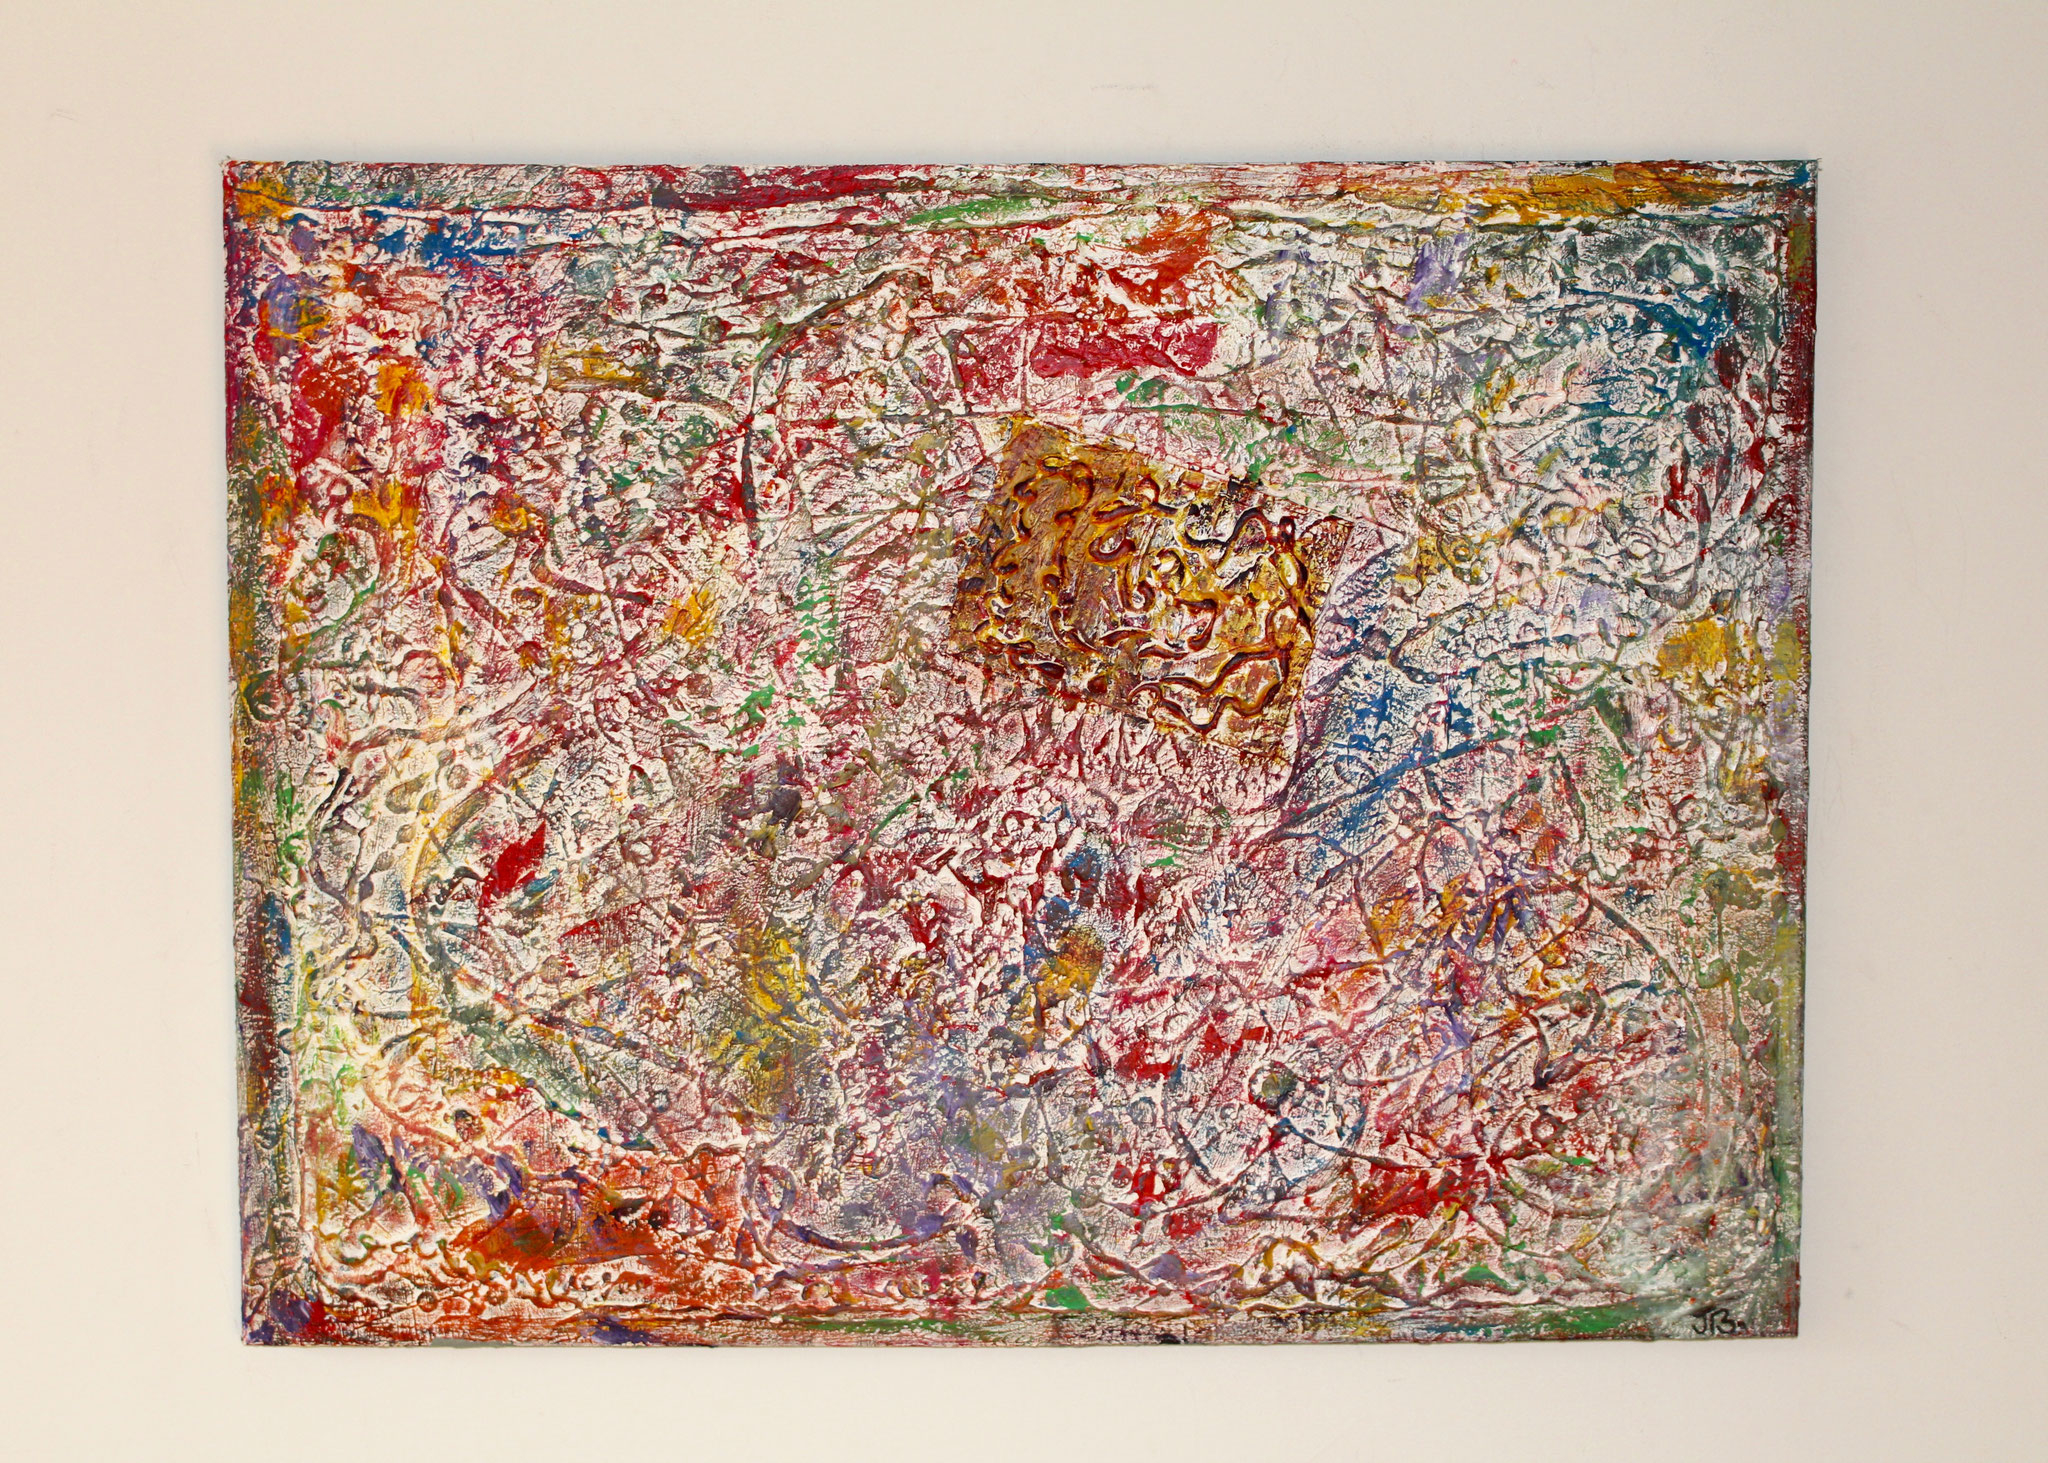 34. ''Colourful fossil.'' oil&acrylic paint (80x60cm)  